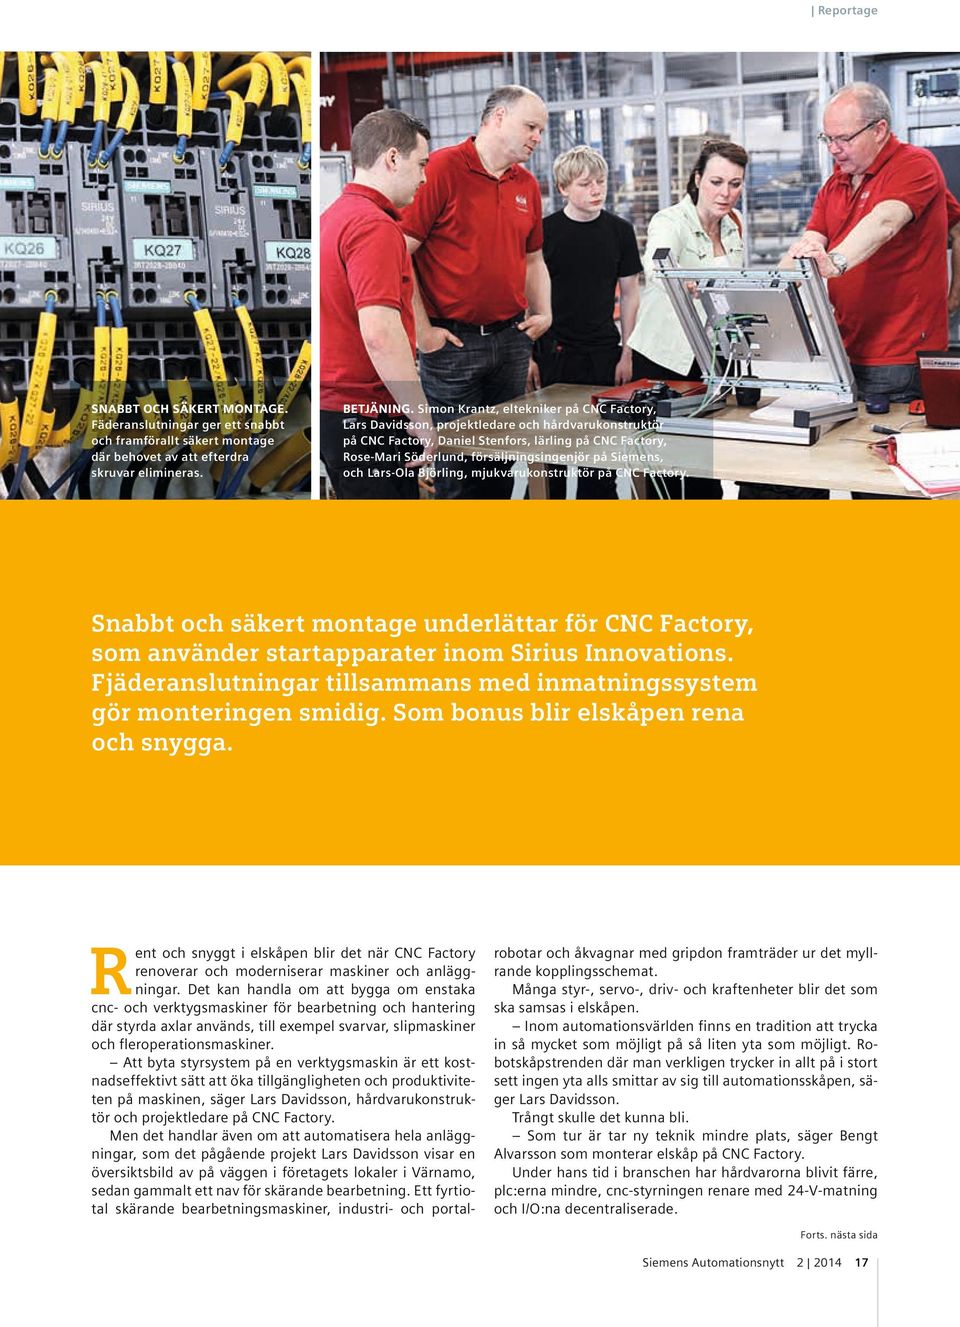 Siemens, och Lars-Ola Björling, mjukvarukonstruktör på CNC Factory. Snabbt och säkert montage underlättar för CNC Factory, som använder startapparater inom Sirius Innovations.